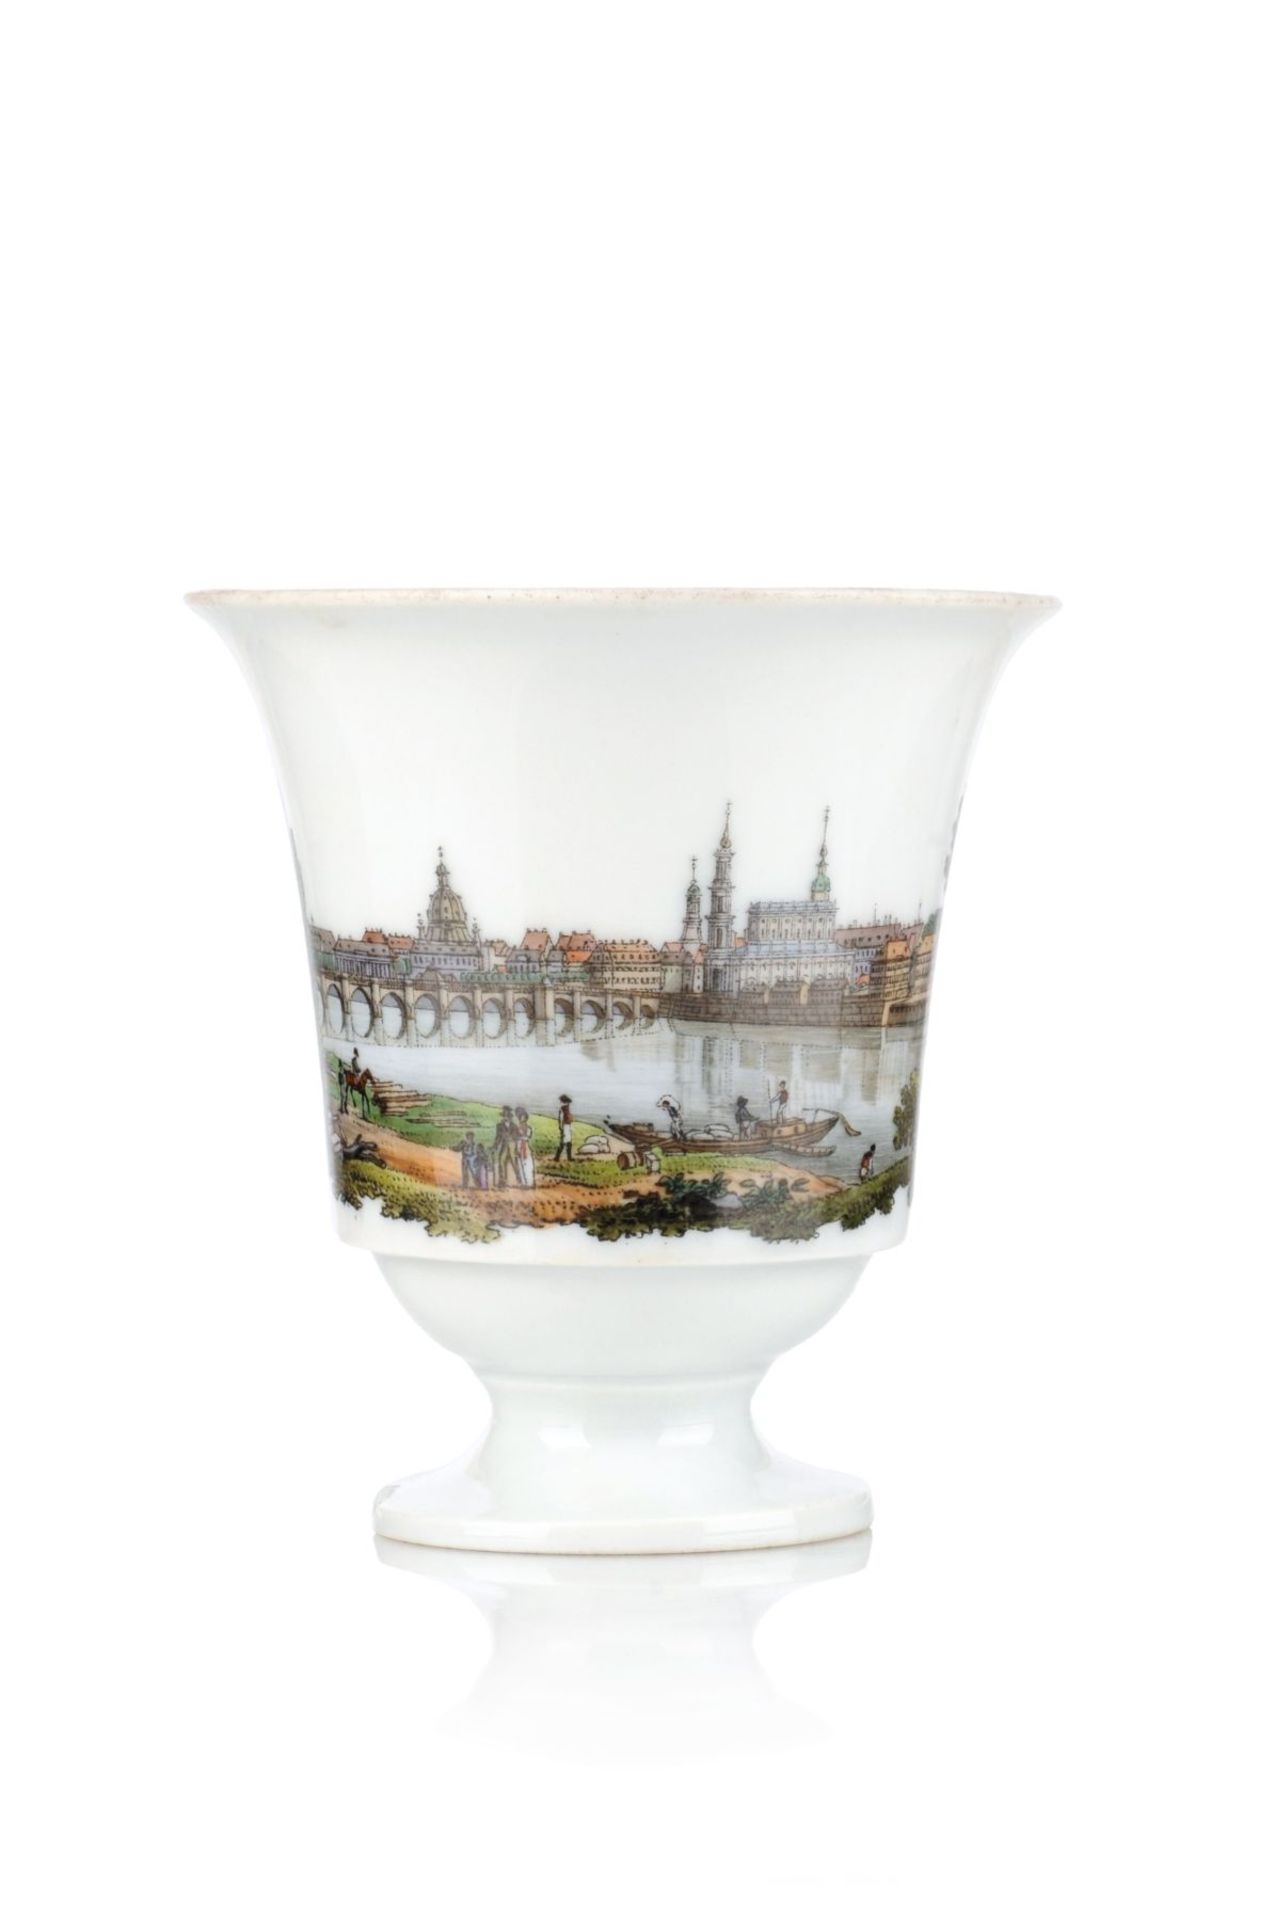 Ansichtentasse "Dresden". Meissen. Um 1820. Porzellan, glasiert, mit Umdruckdekor, koloriert. - Image 2 of 2